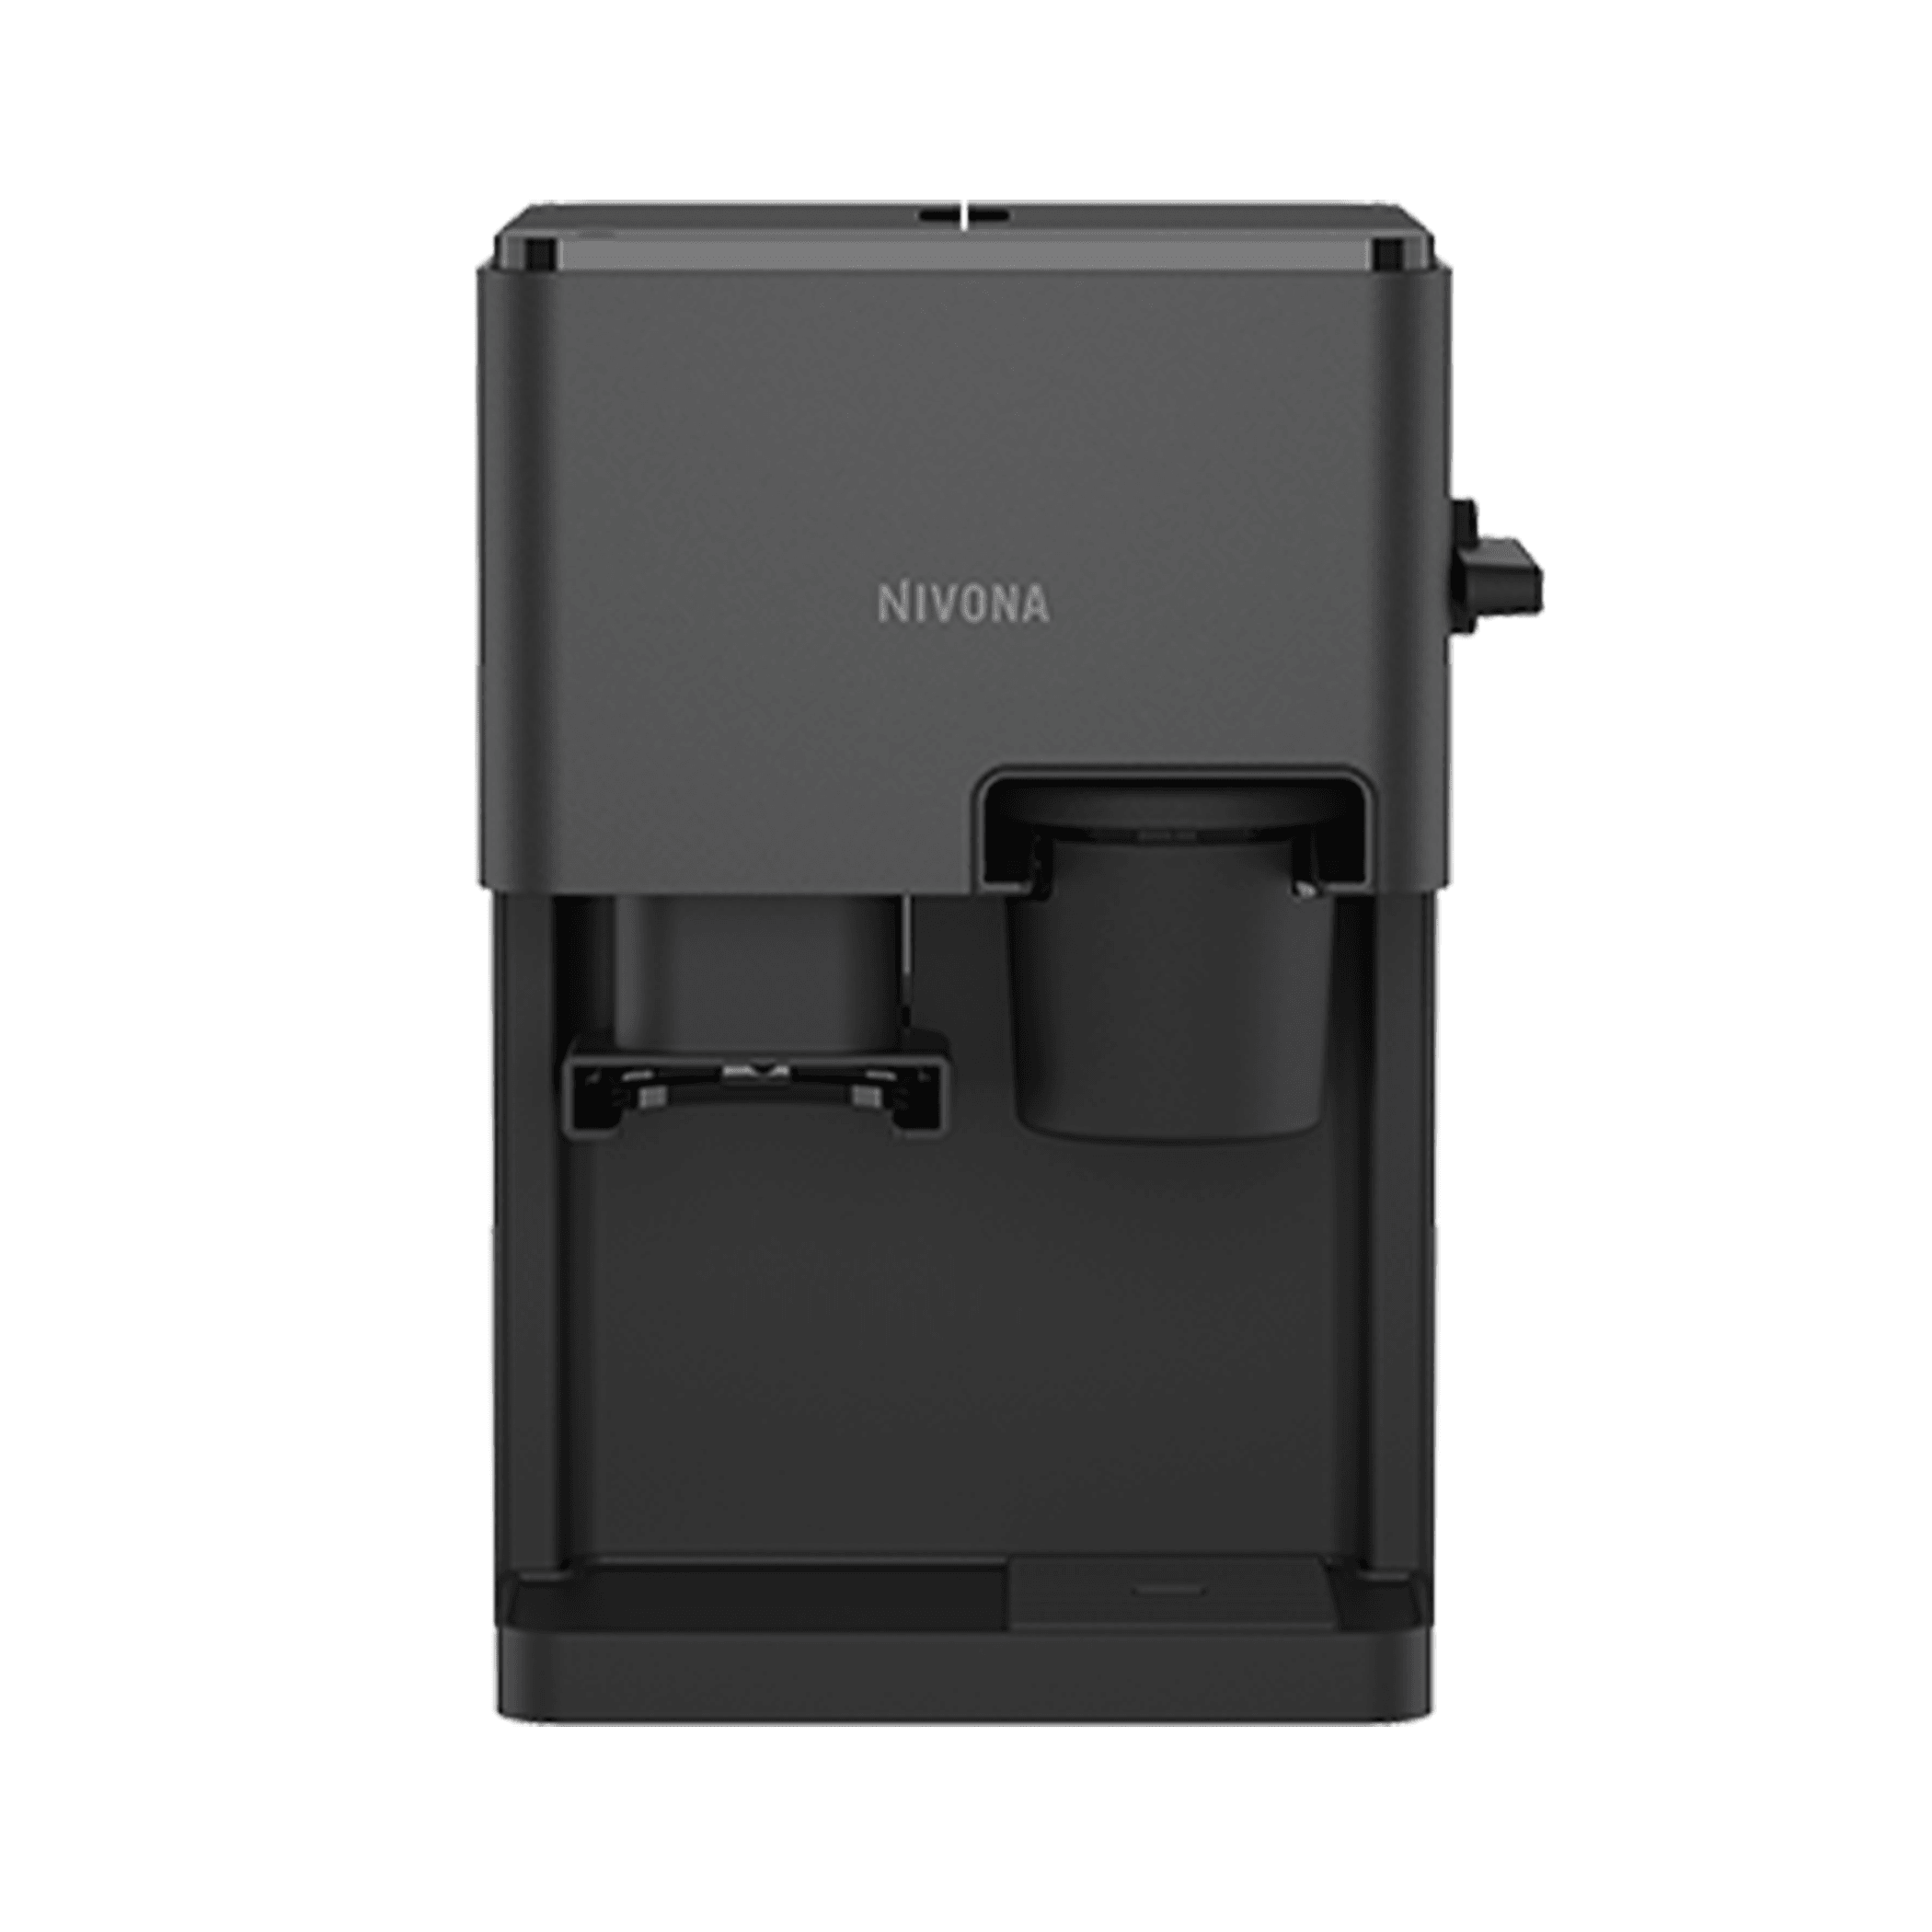 NIVONA CUBE 4106 Yarı Otomatik Kahve Makinesi Gri / Siyah